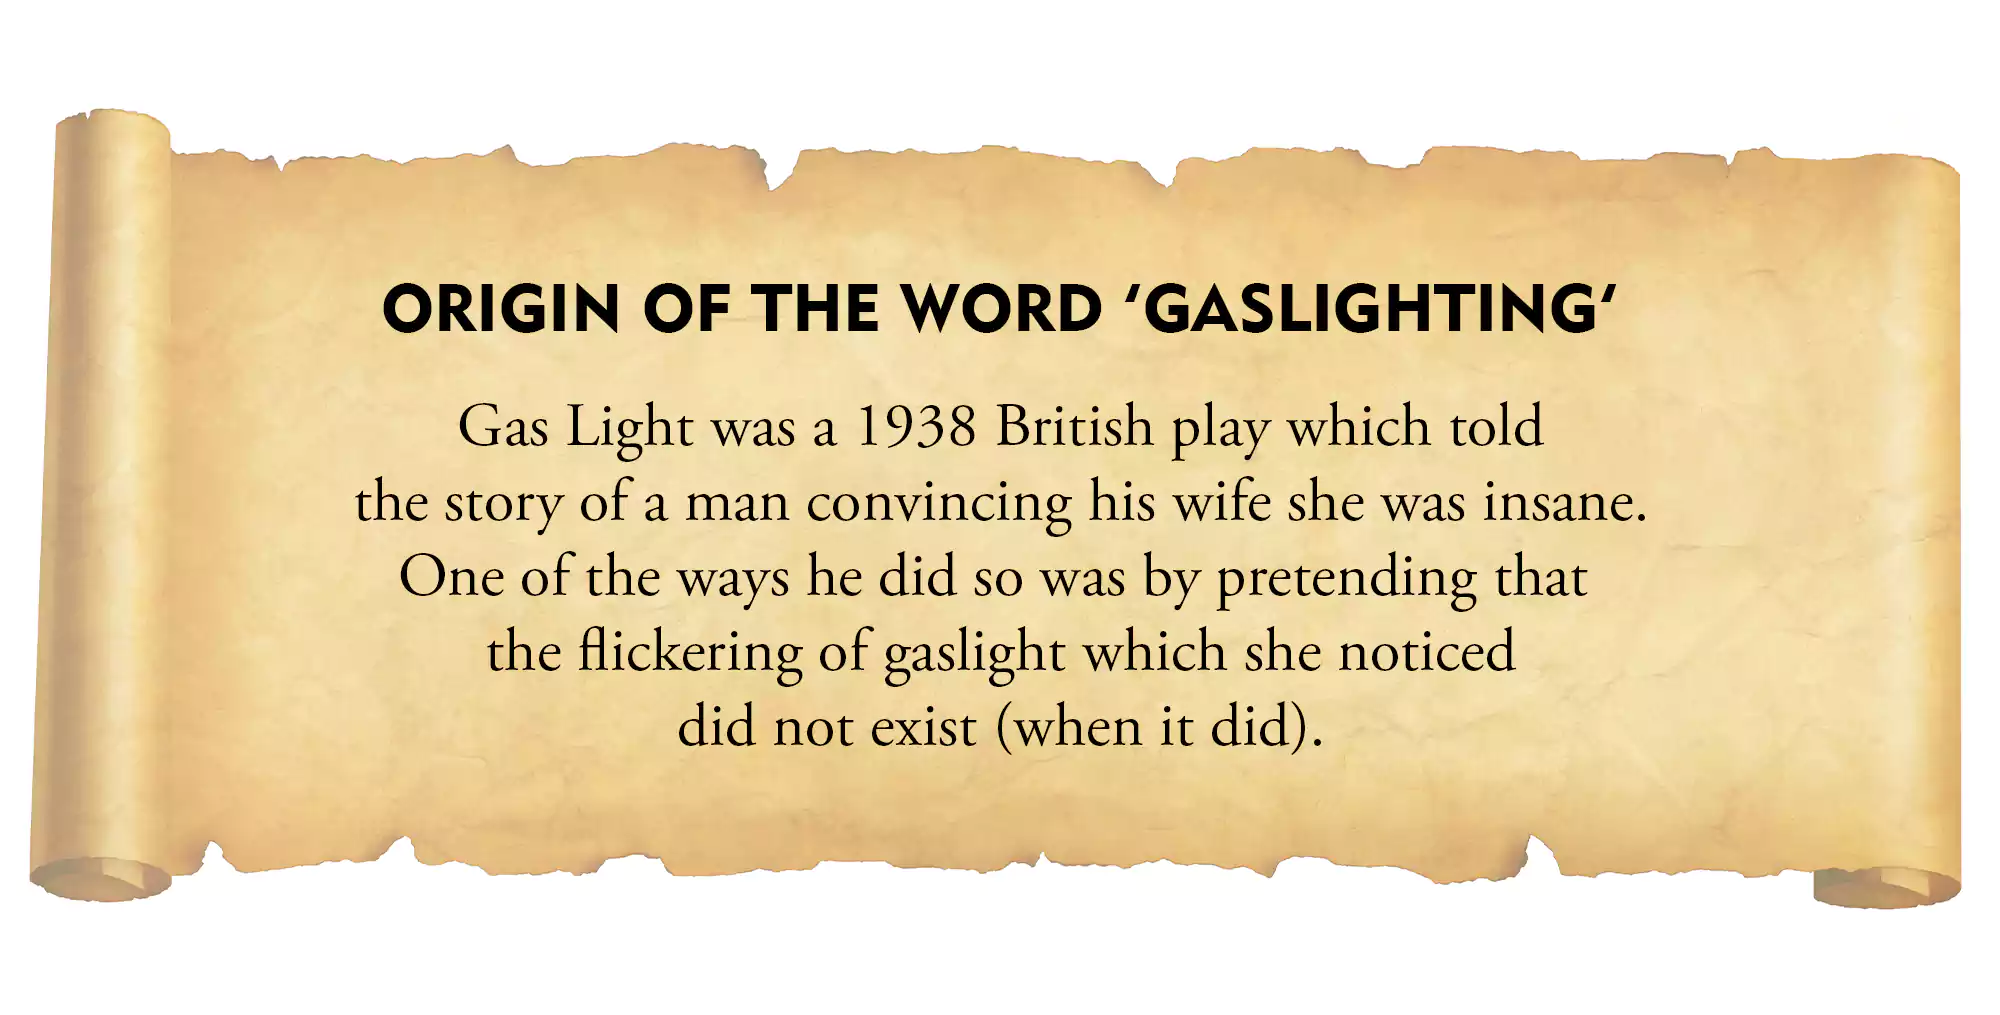 Origin of the word 'gaslighting'